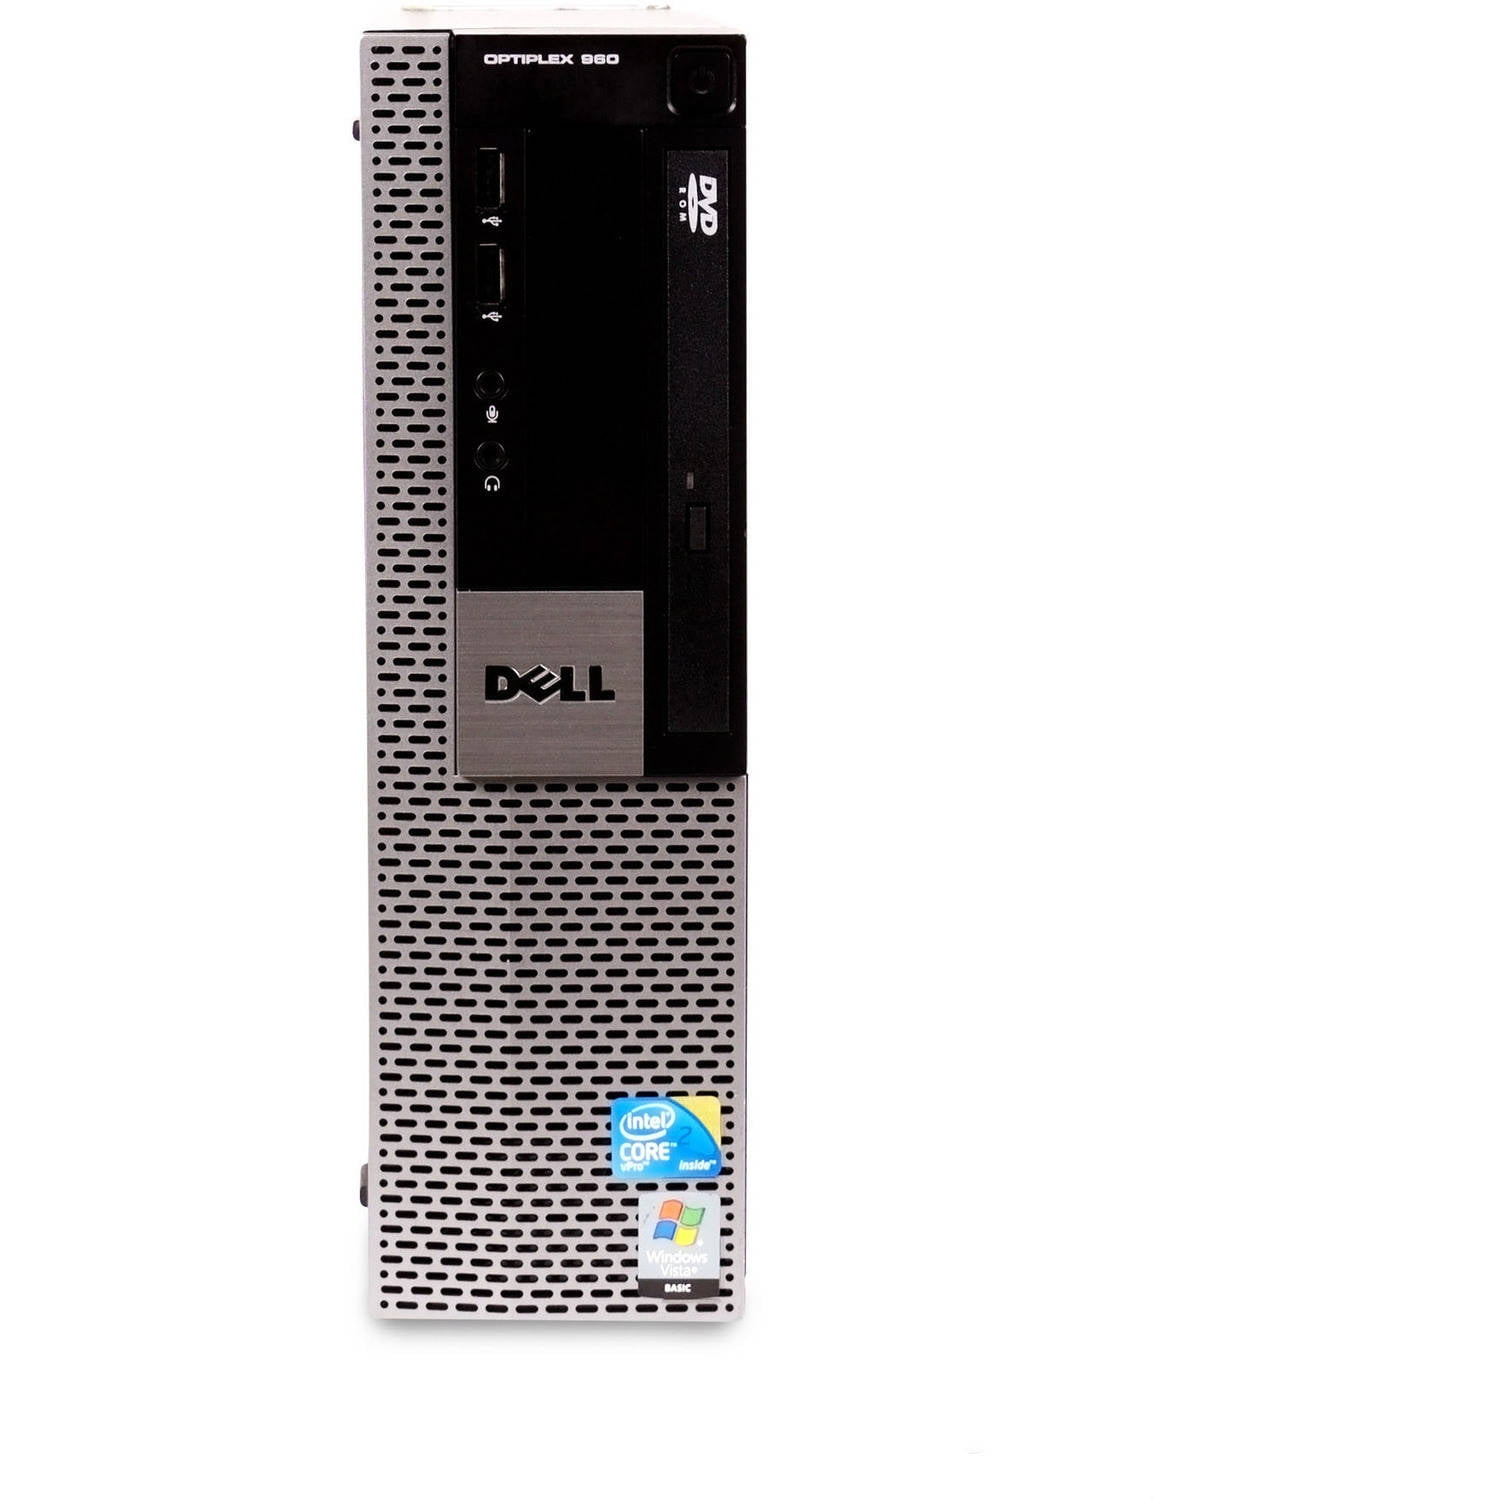 Windows 7 Professional 64 bit Loaded Dell Optiplex 960-320GB Hard Drive 